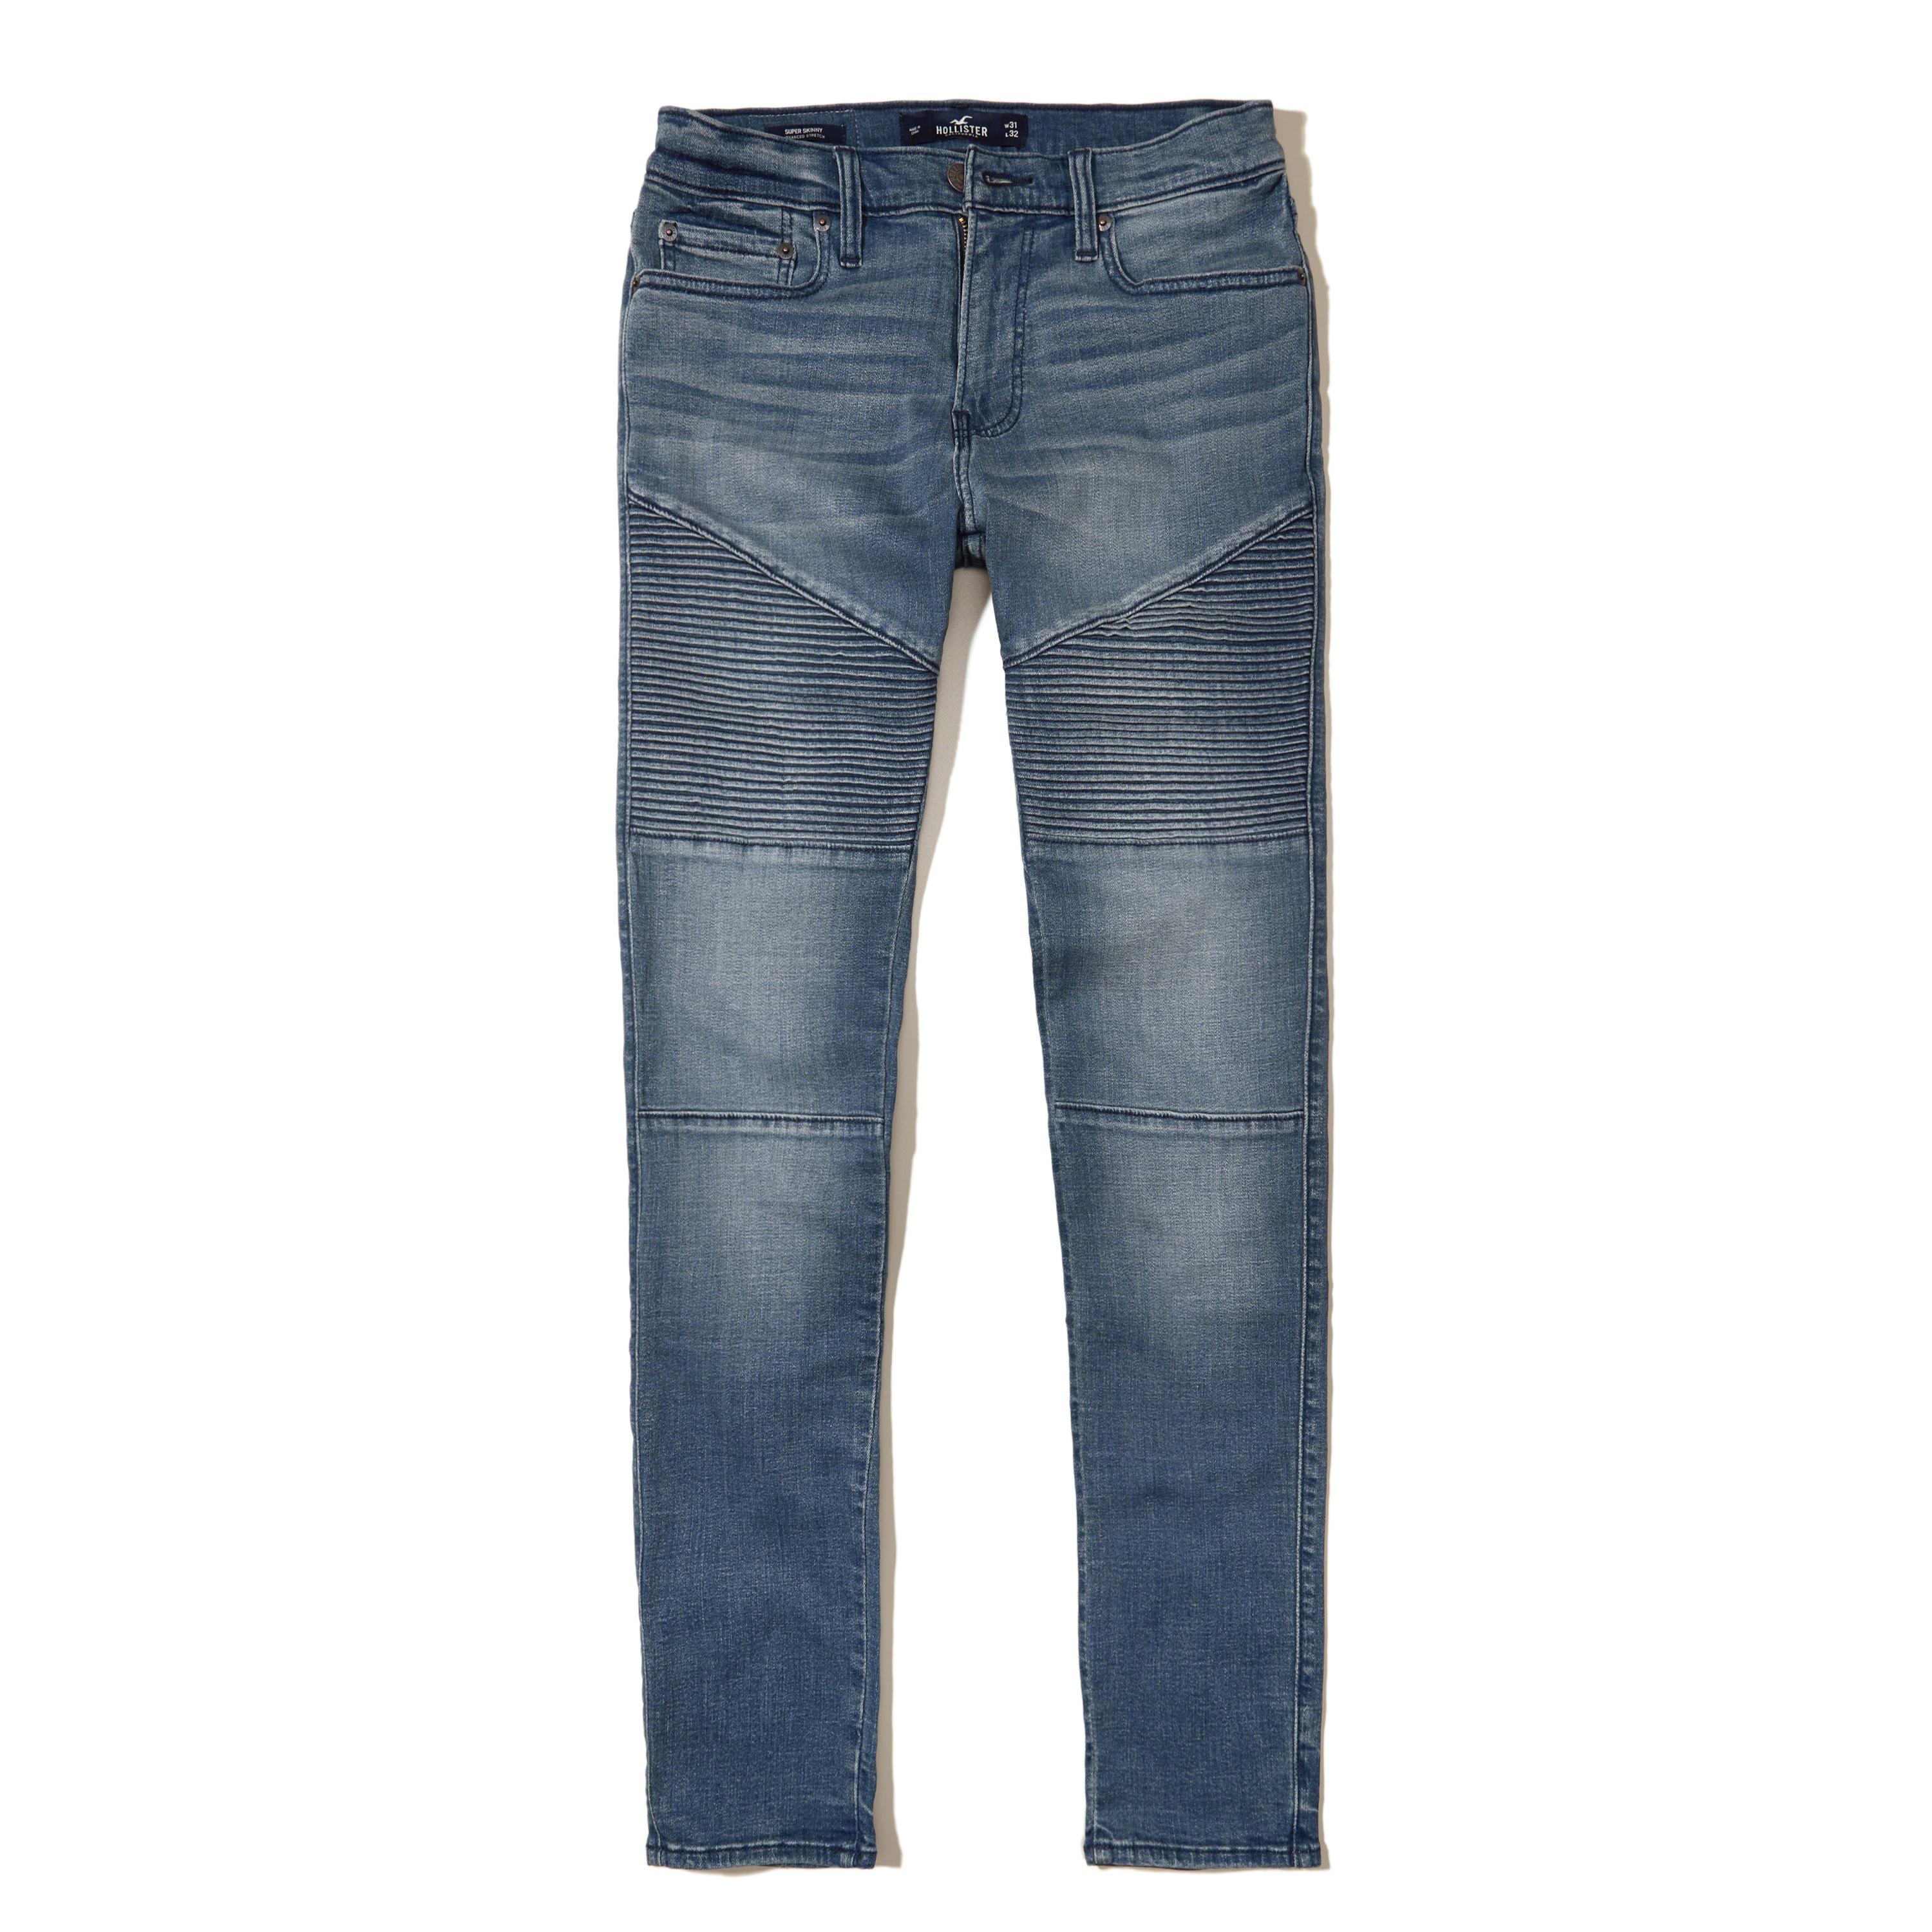 Lyst - Hollister Super Skinny Jeans in Blue for Men